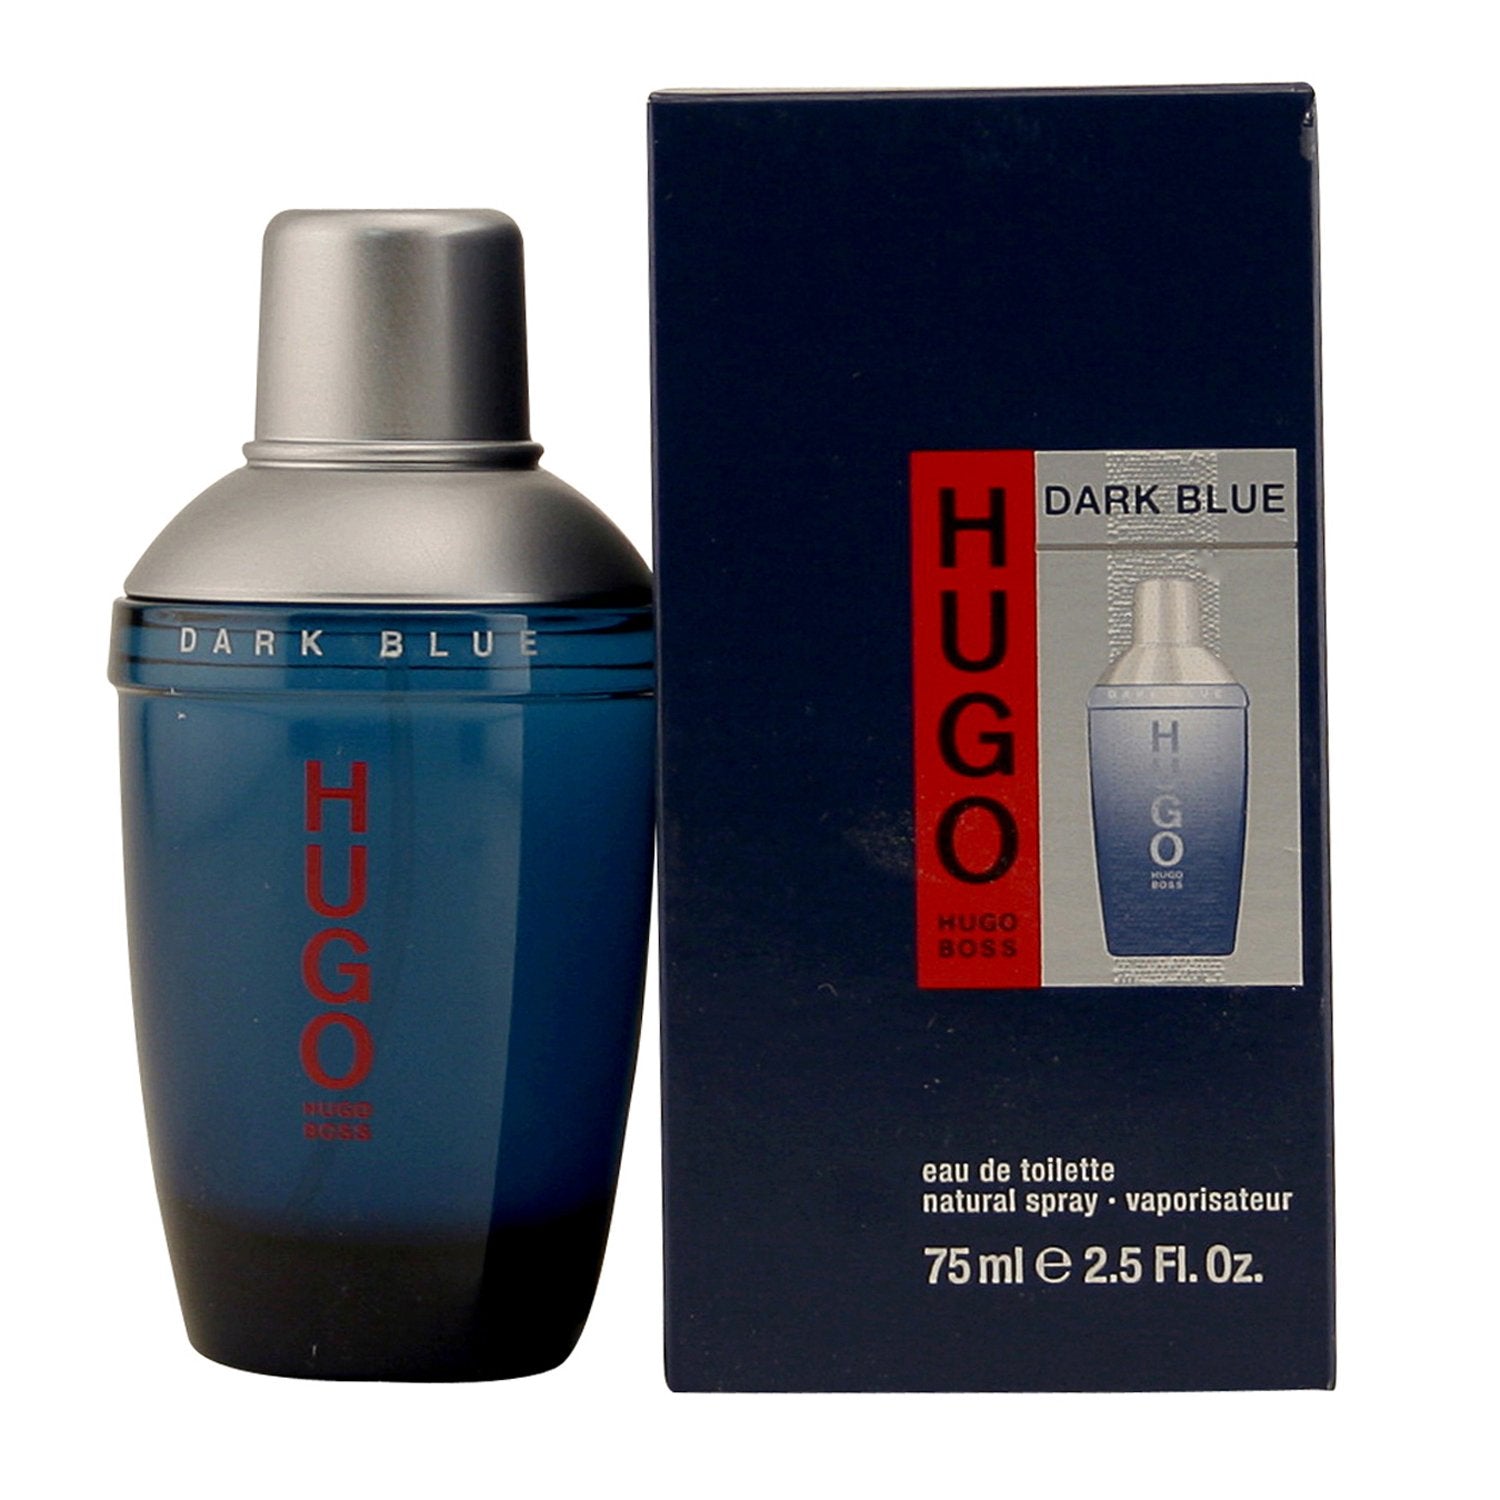 hugo boss dark blue cologne